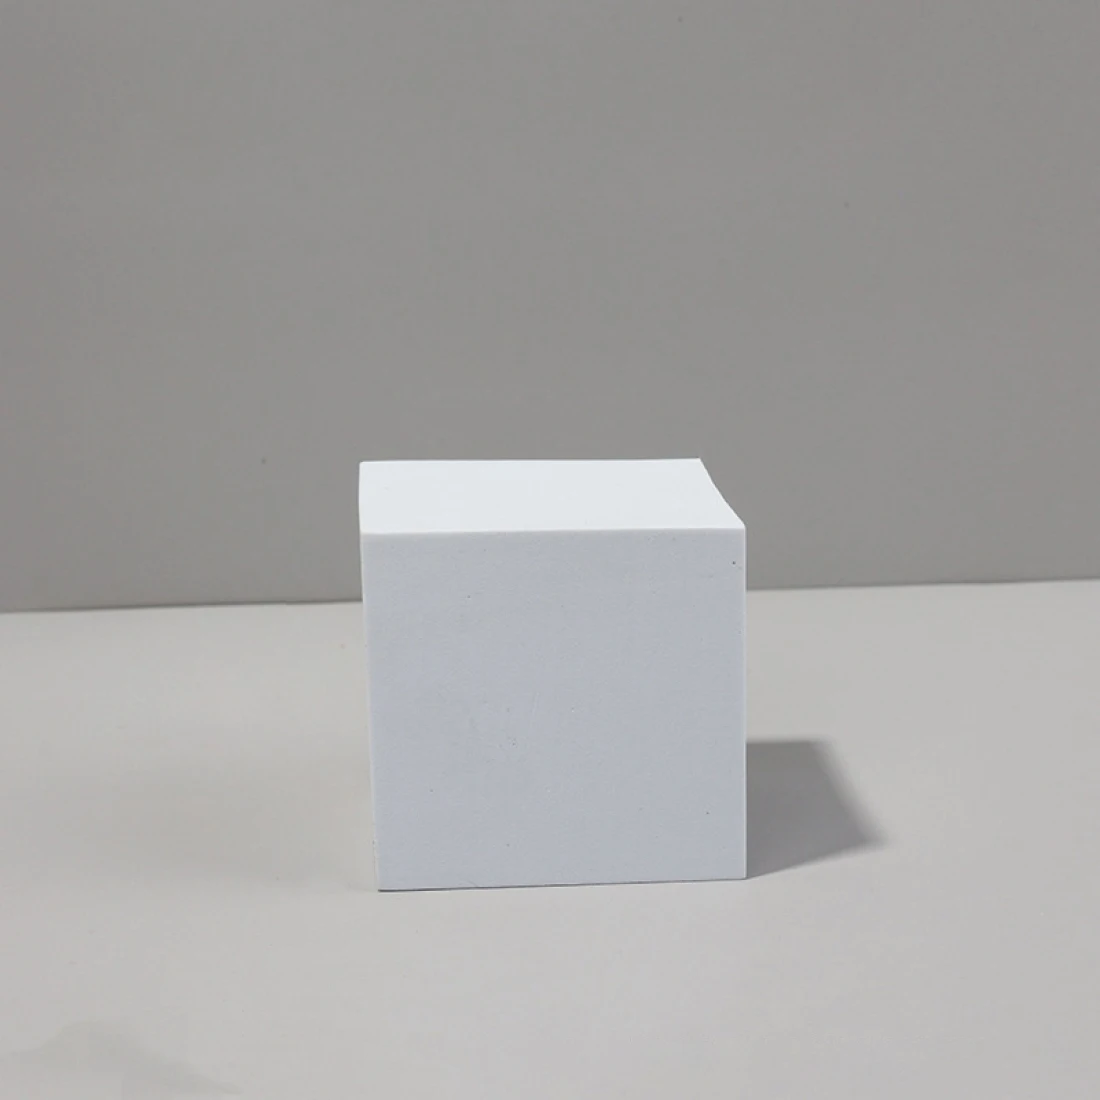 7 x 7 x 6 см Кубовидная геометрия для однотонной фотографии Cube Реквизит для фотосъемки Фон Настольная съемка Пенопластовый реквизит